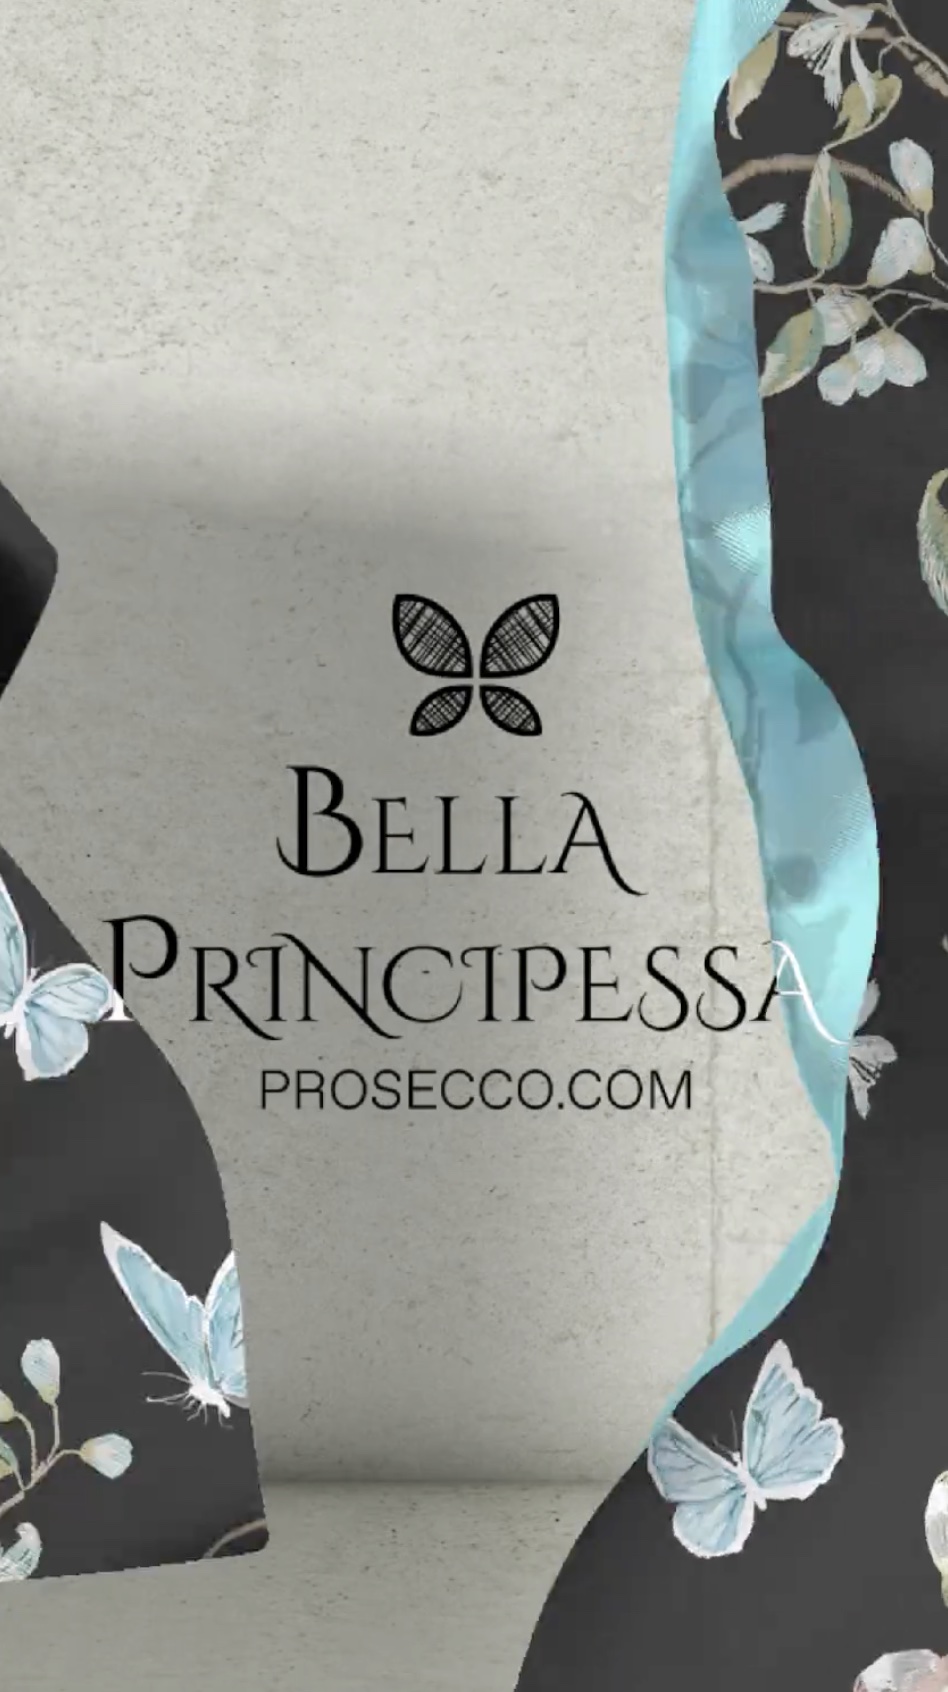 Il logo Bella Principessa di Prosecco fluttua nel vento, rappresentando il marchio di punta di Prosecco Ventures.